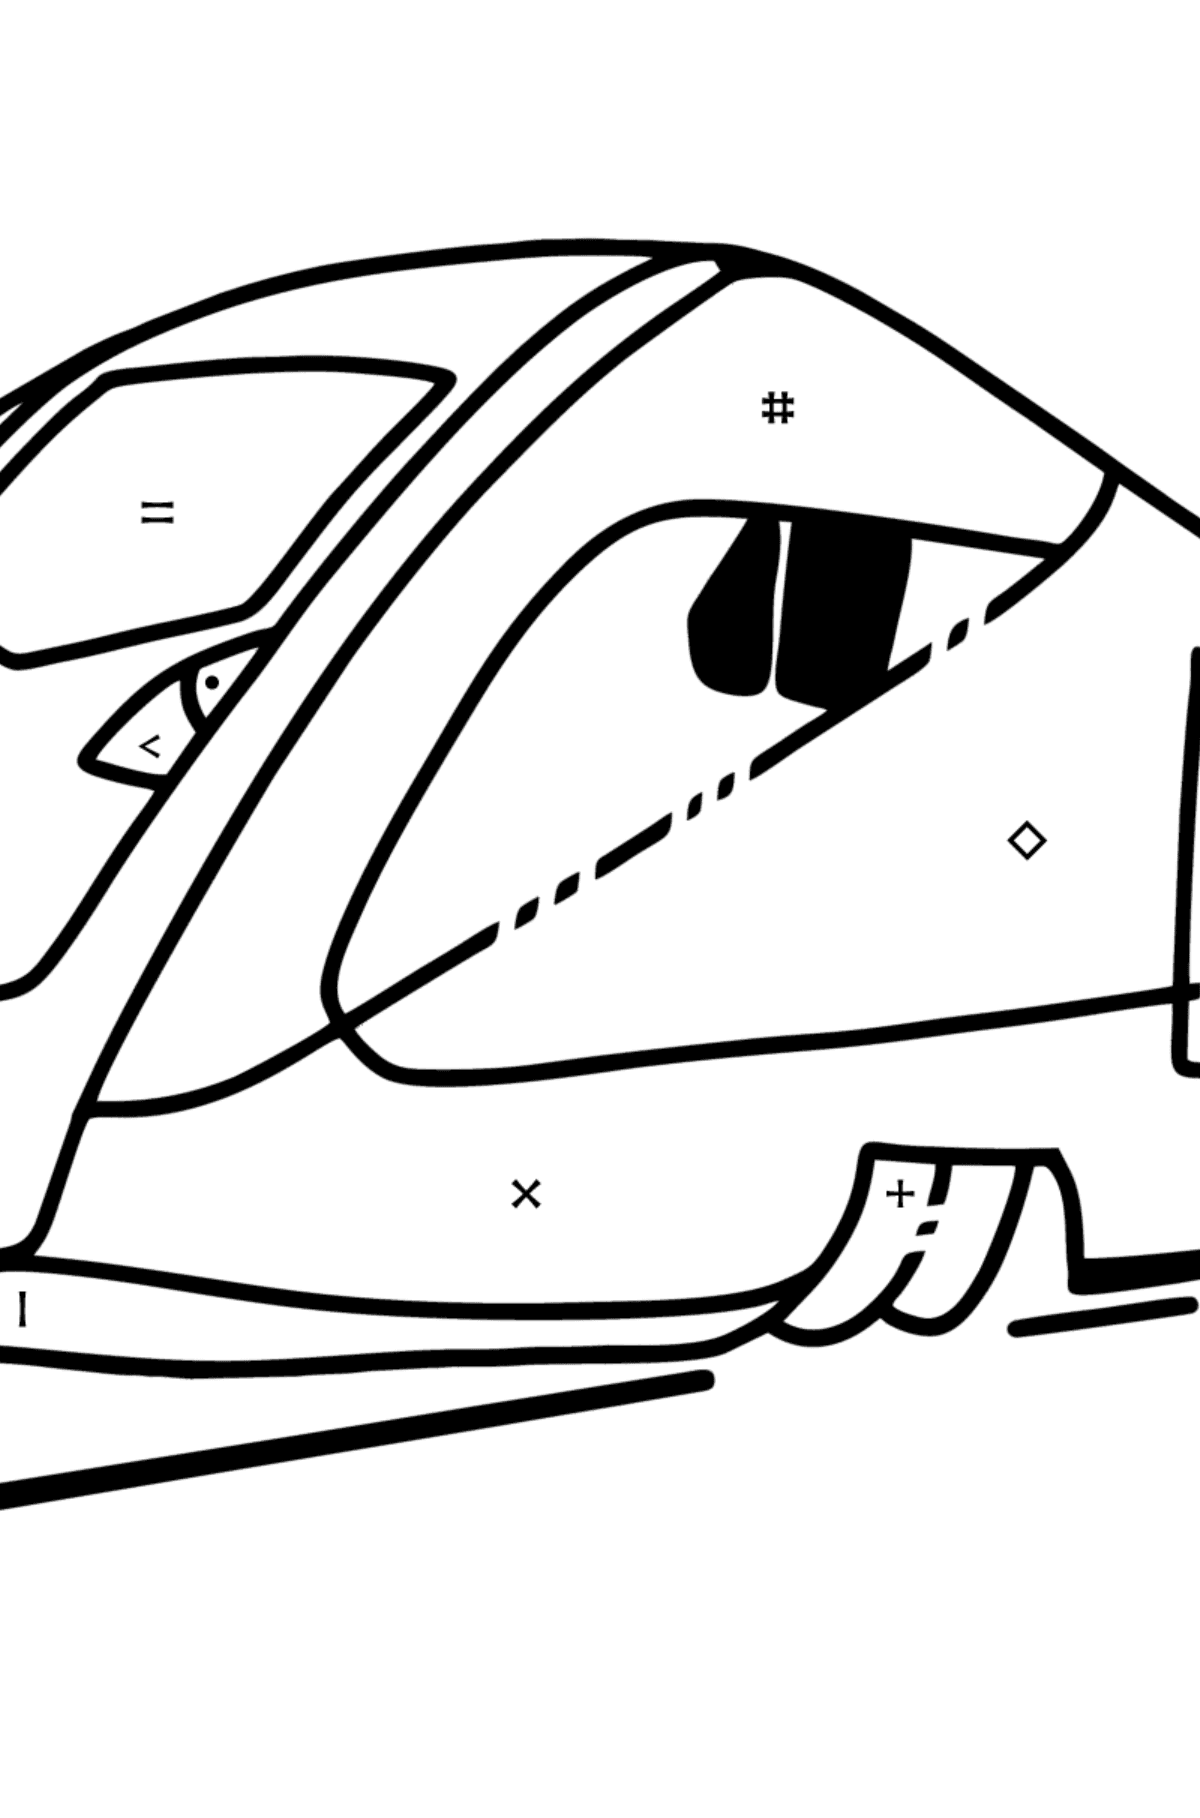 Tegning til fargelegging moderne tog - Fargelegge etter symboler for barn